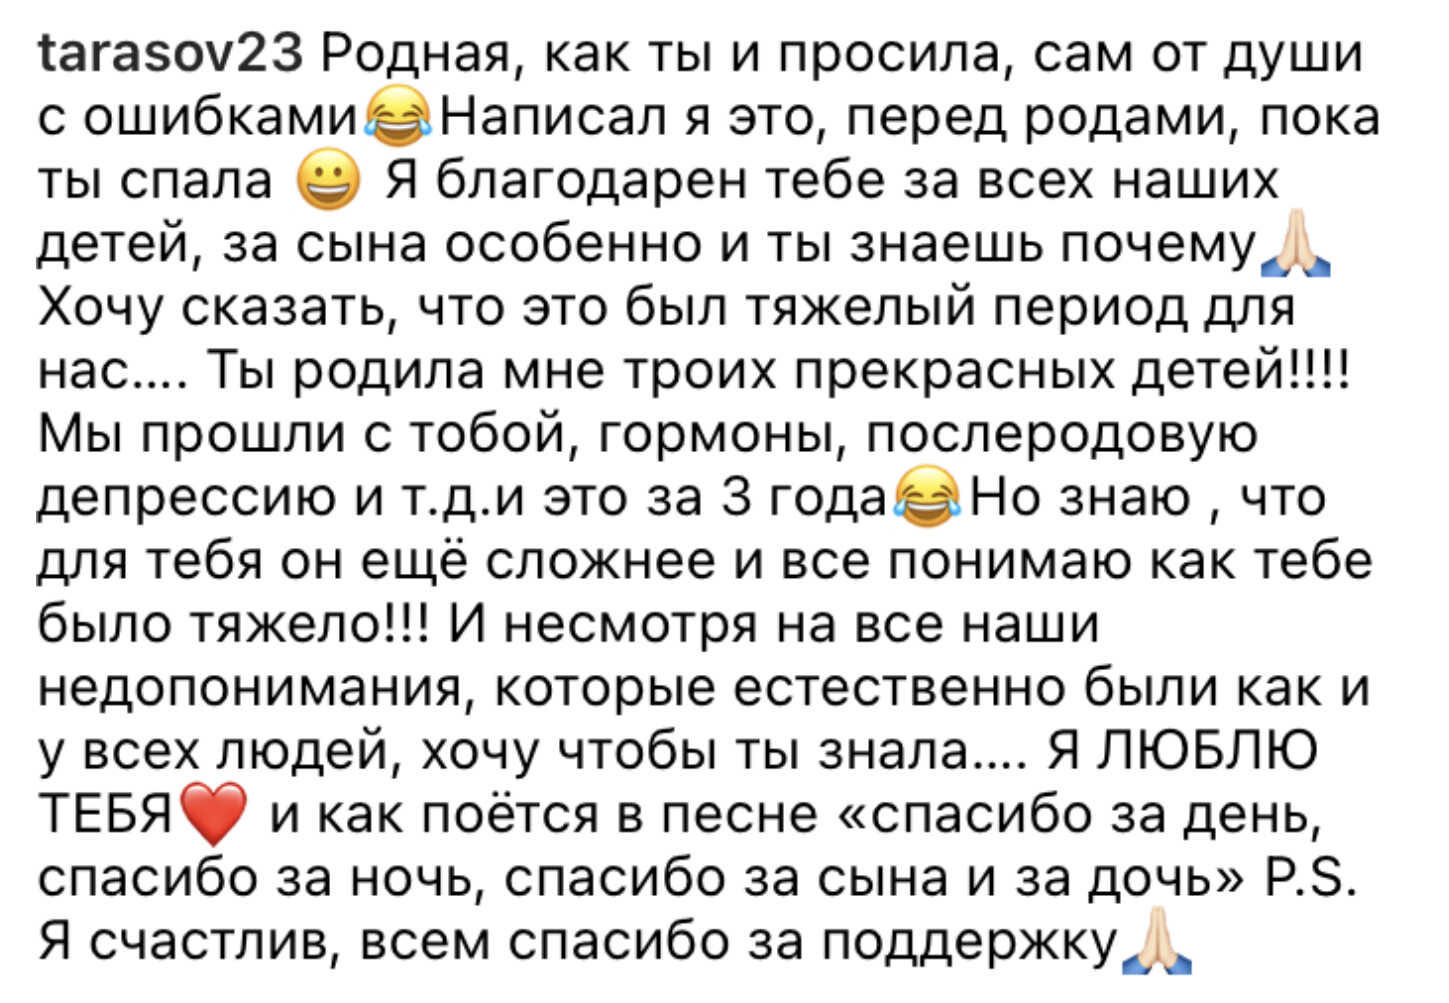 Дмитрий Тарасов опубликовал первые фото с новорождённым сыном и сам, с ошибками, написал пронзительный пост Анастасии Костенко по её же просьбе